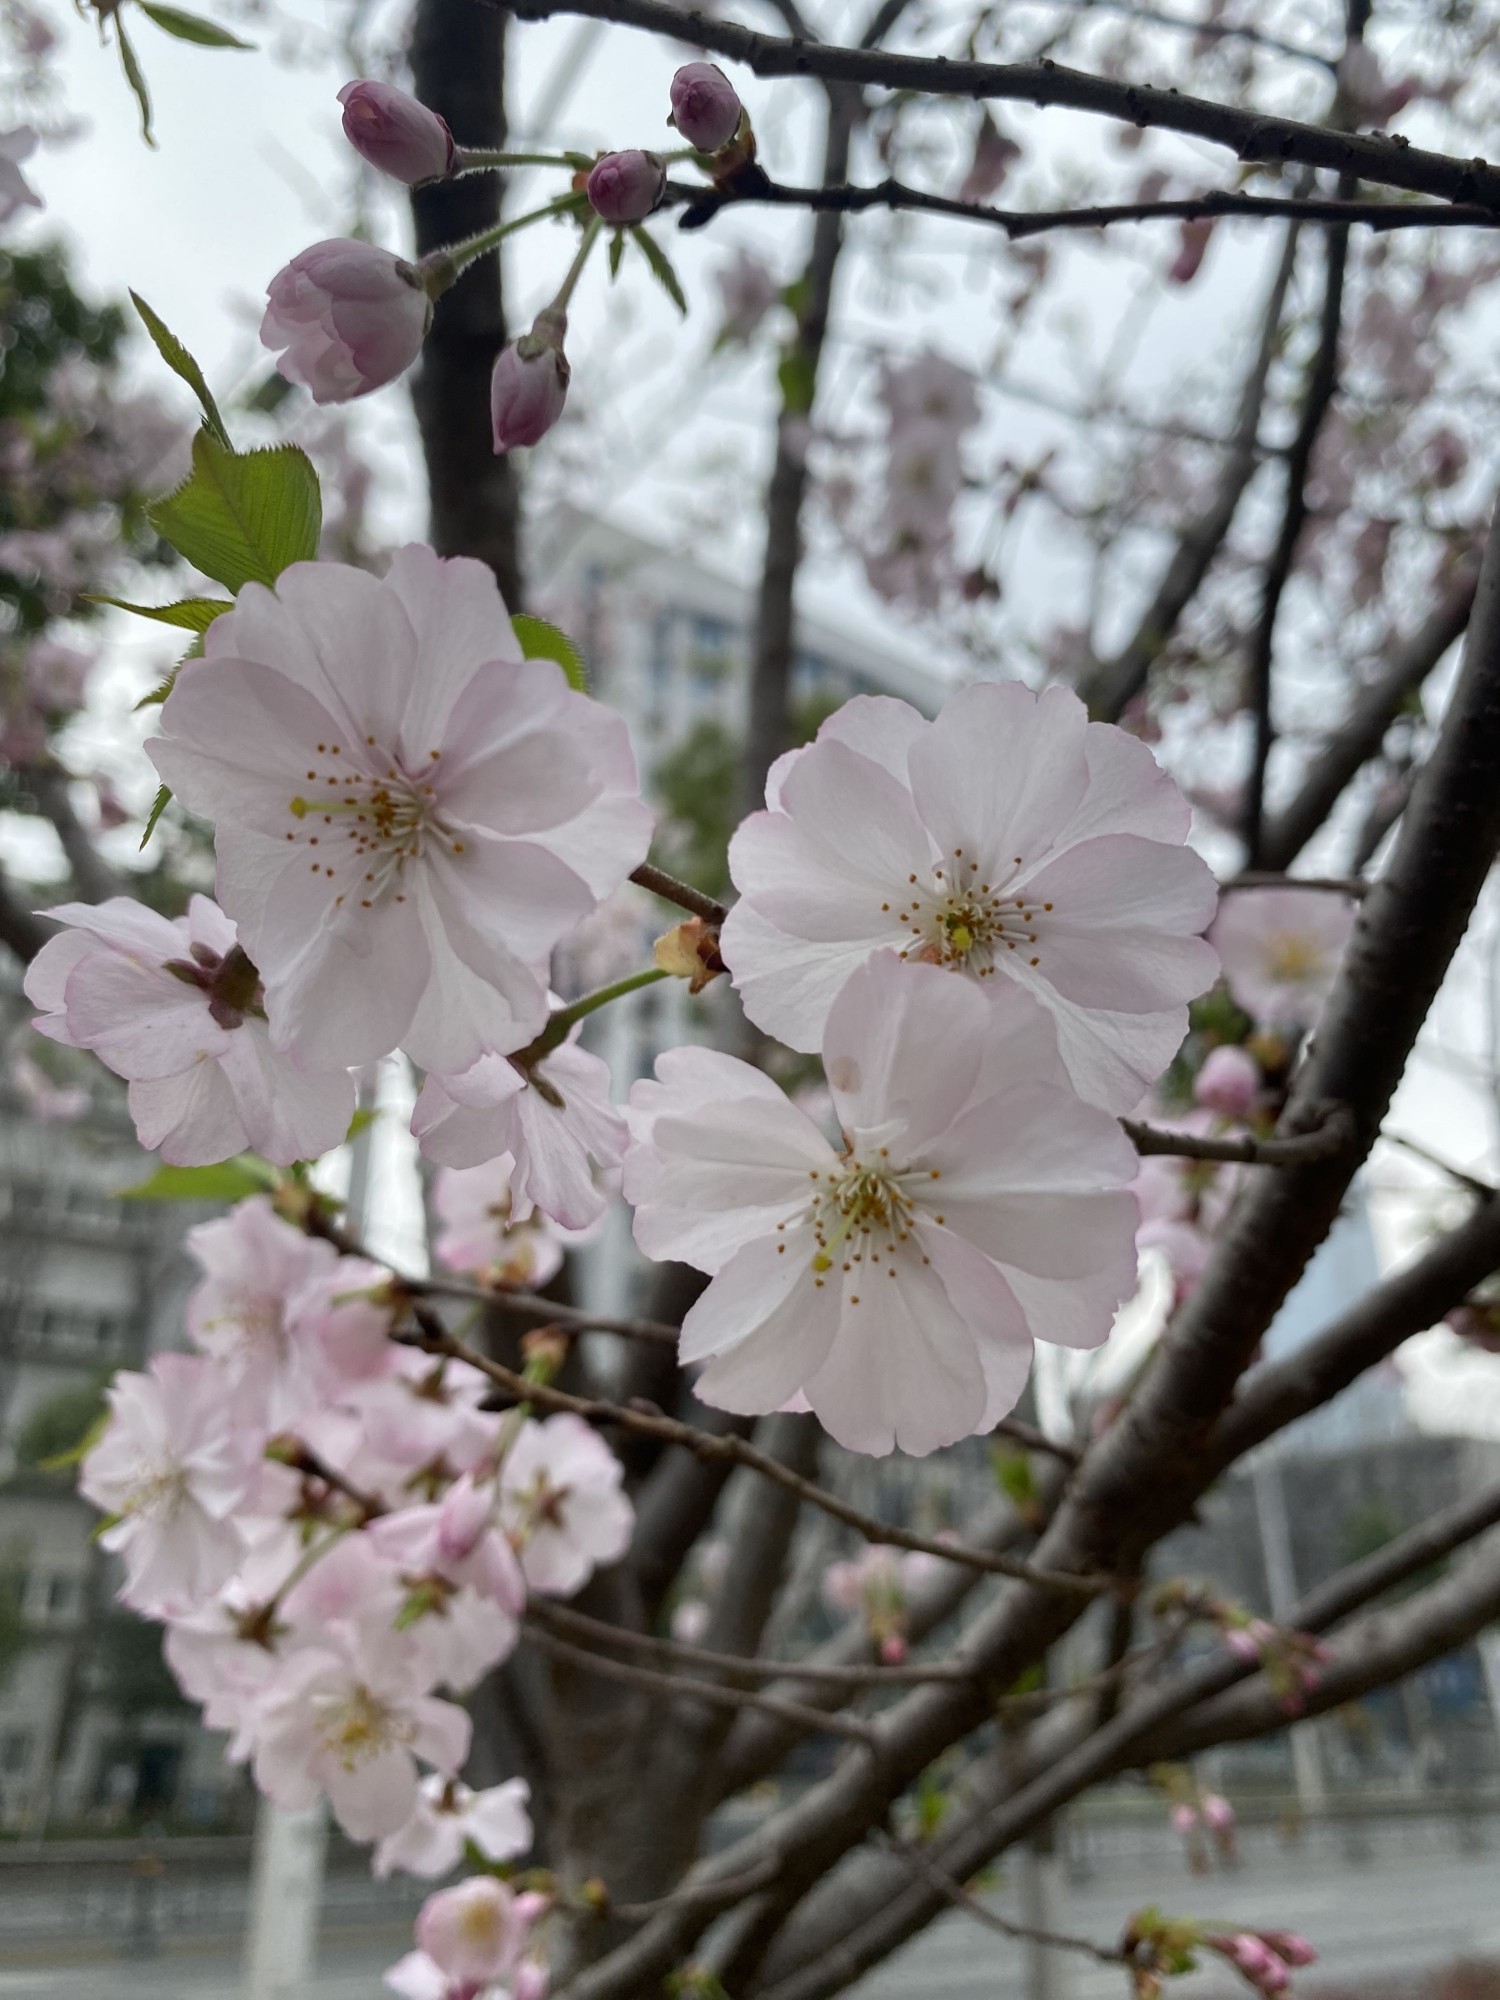 New variety first blooms on street | 樱花新品种首次绽放武汉街头